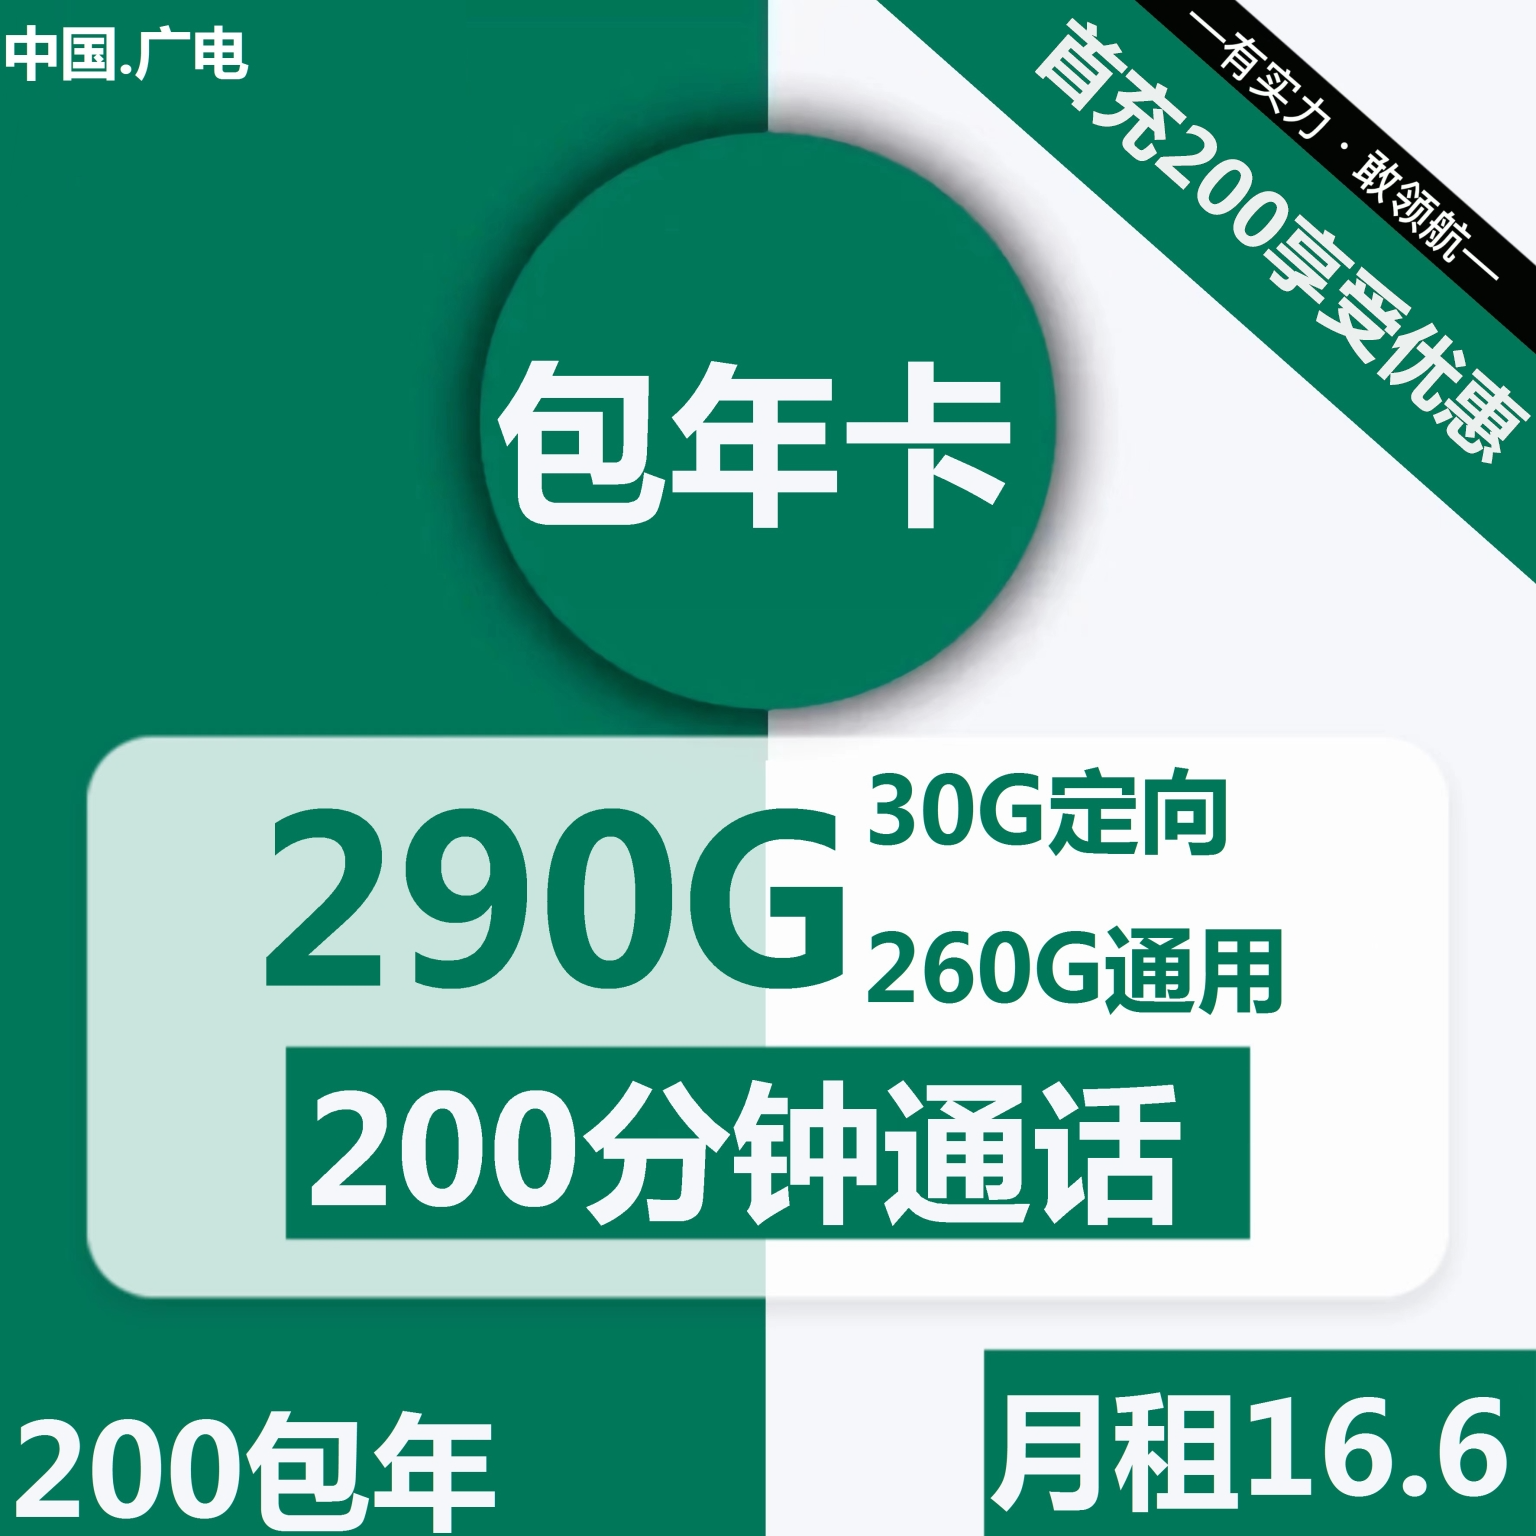 【包年卡】广电包年卡16.6元包260G通用+30G定向+200分钟通话